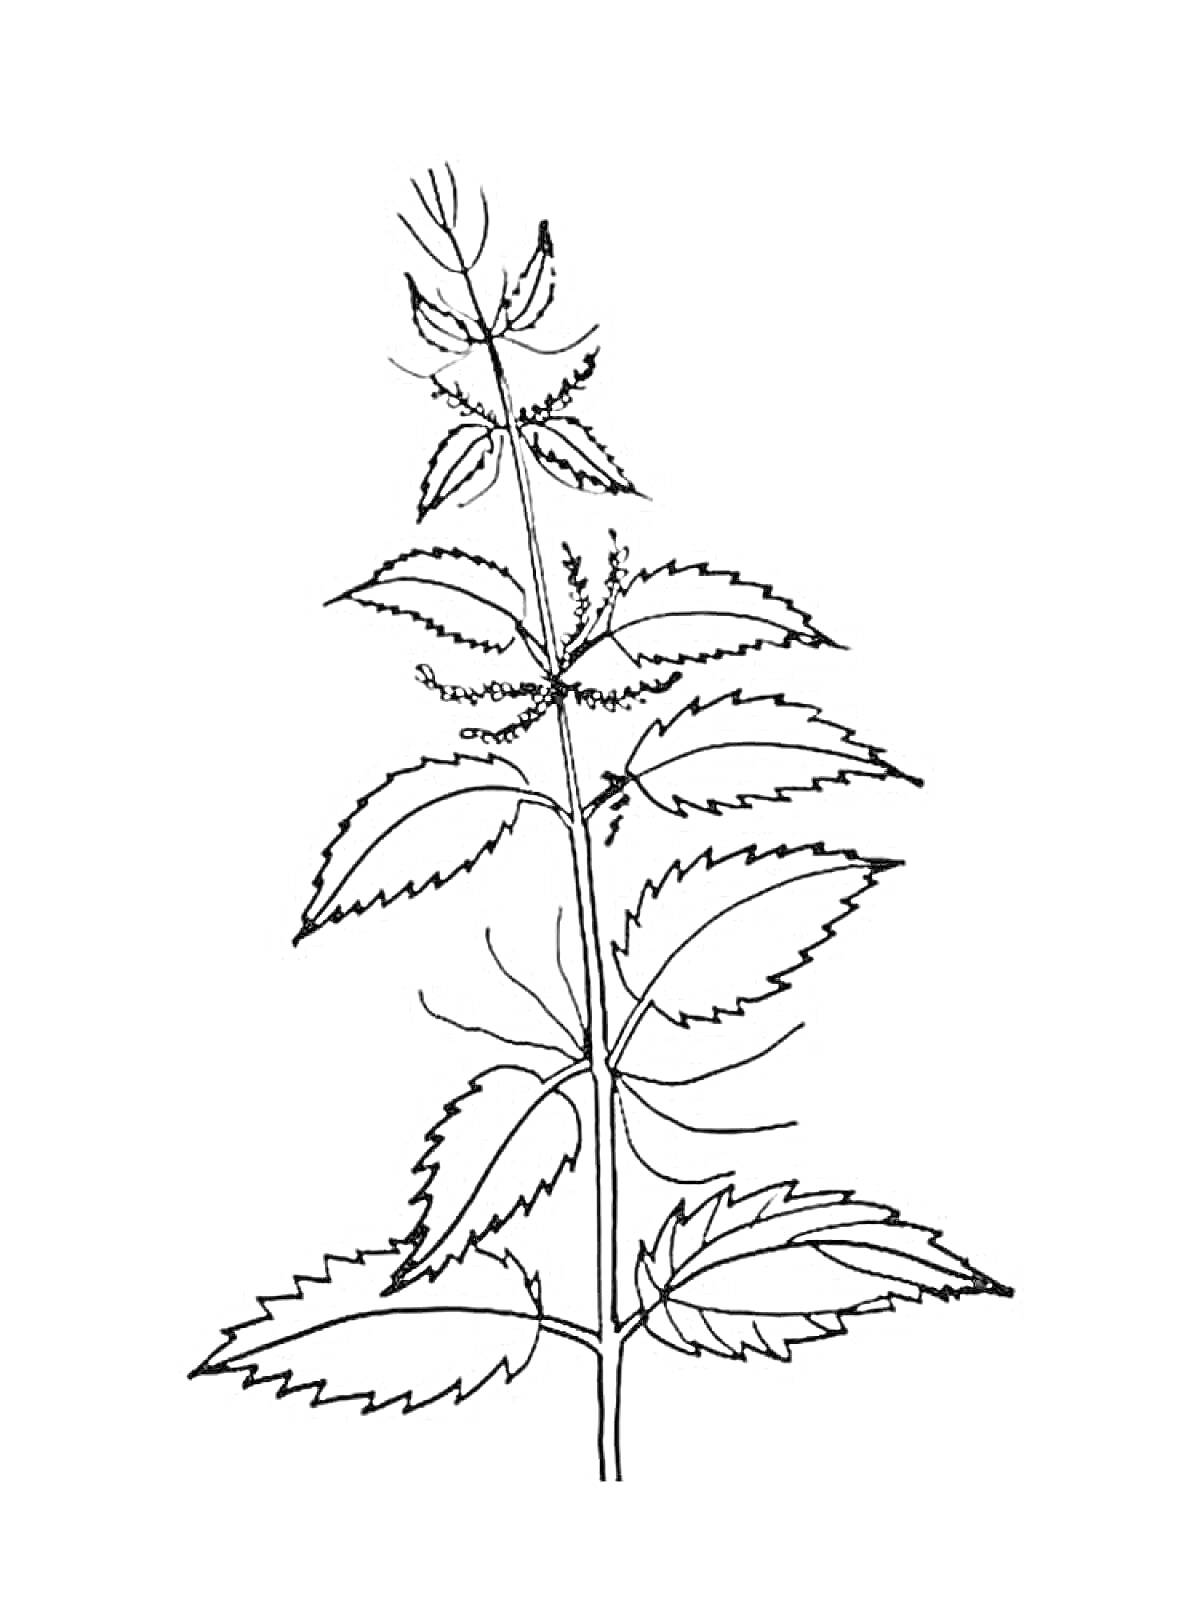 Крапива обыкновенная: листья с зубчатыми краями и длинный стебель